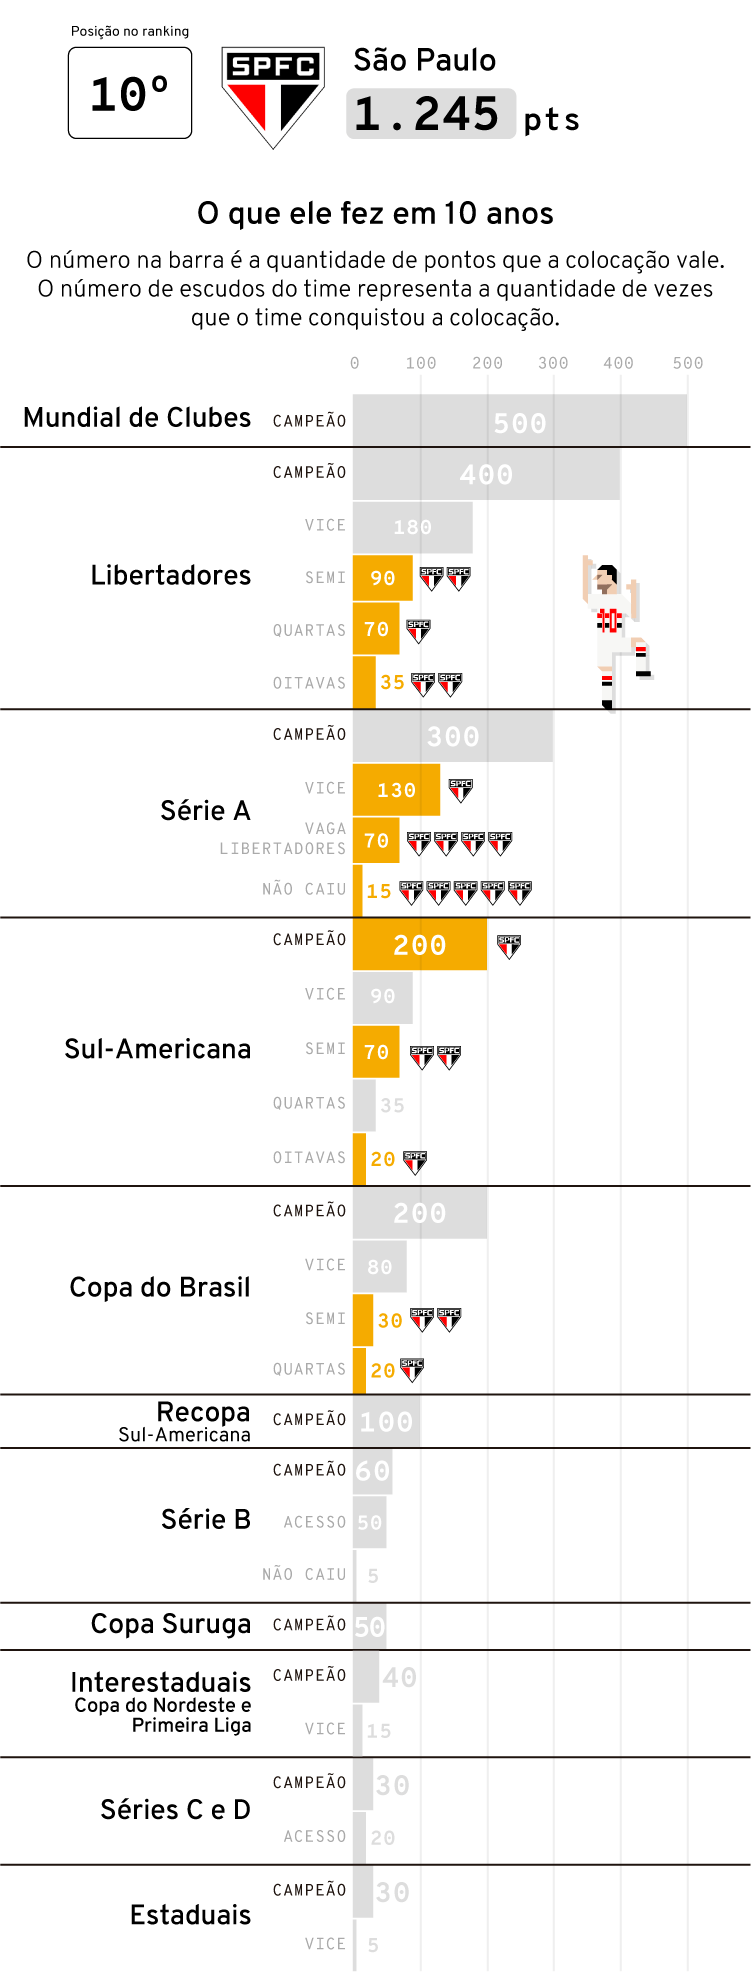 Conheça os 10 maiores Clubes de Futebol Americano do Brasil